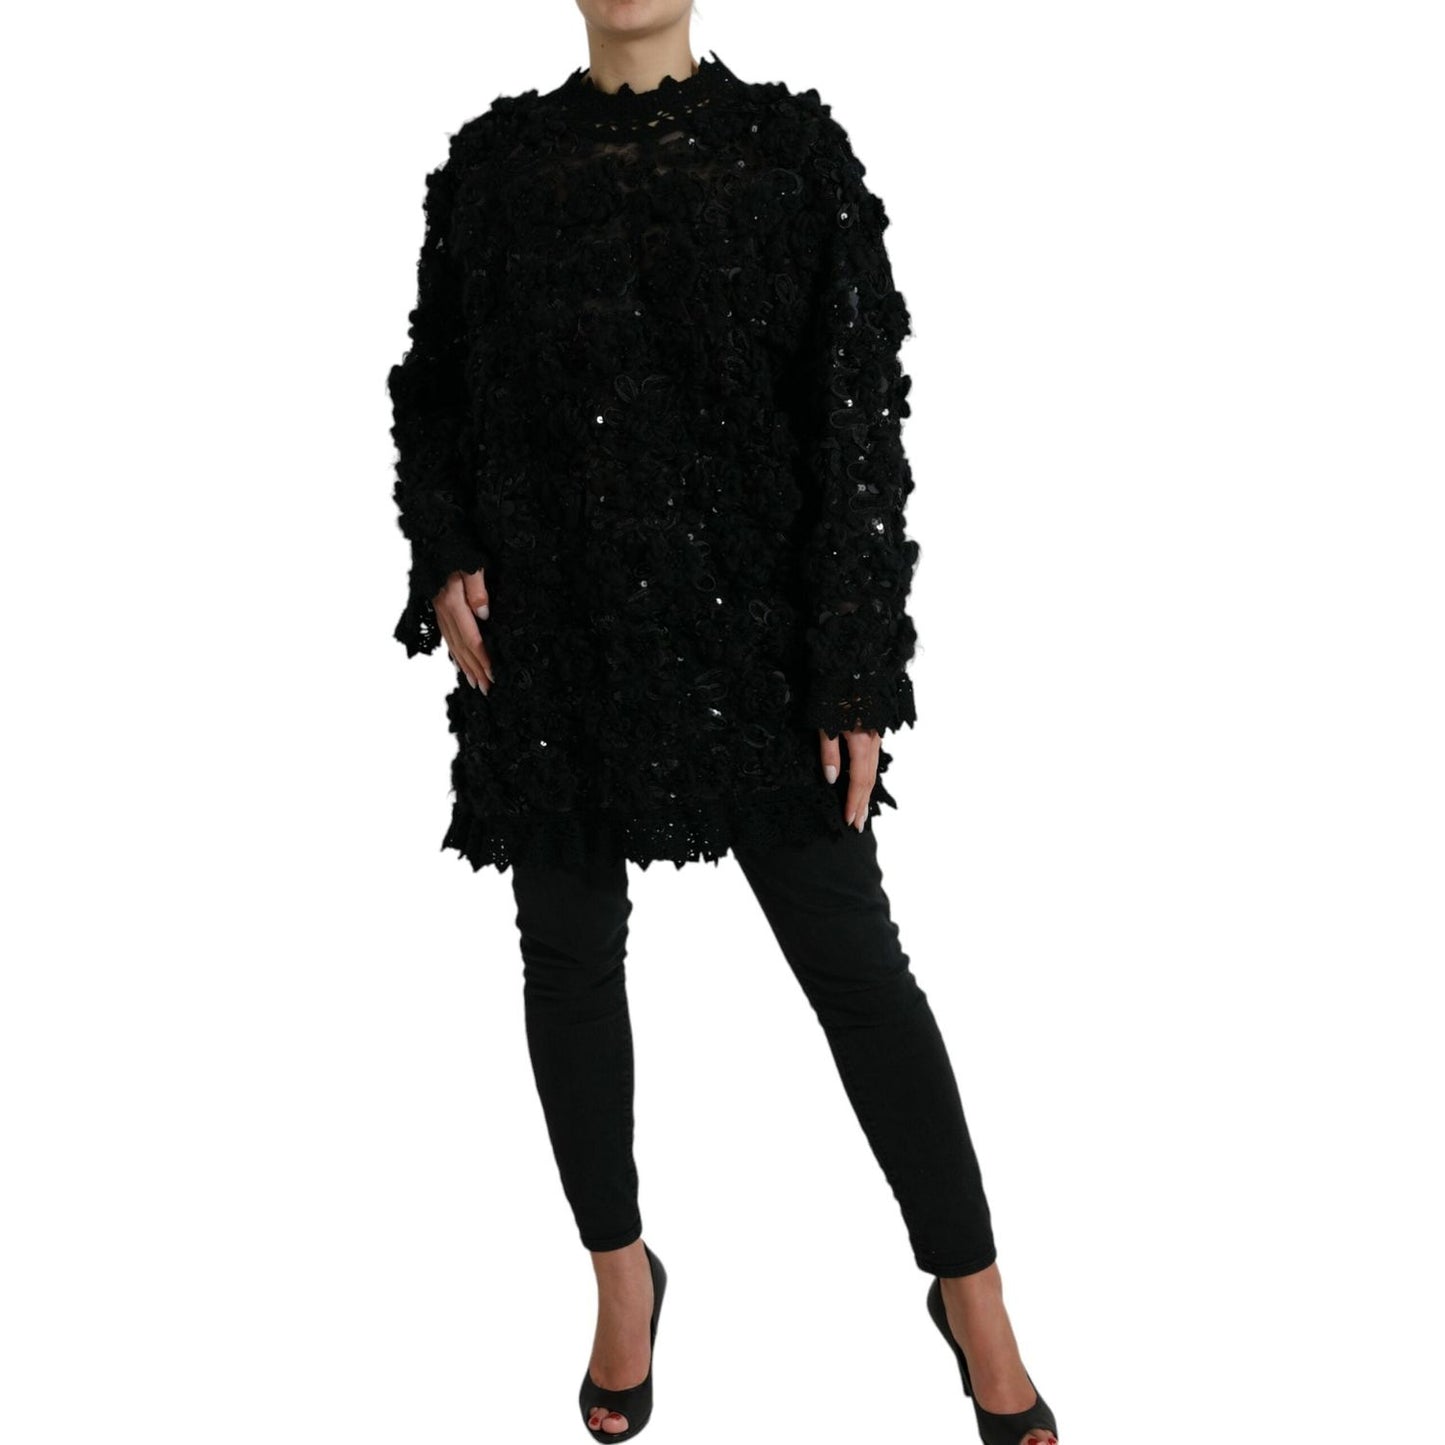 Dolce & Gabbana Sequin Embellished Black Pullover black-sequined-embellished-pullover-sweater